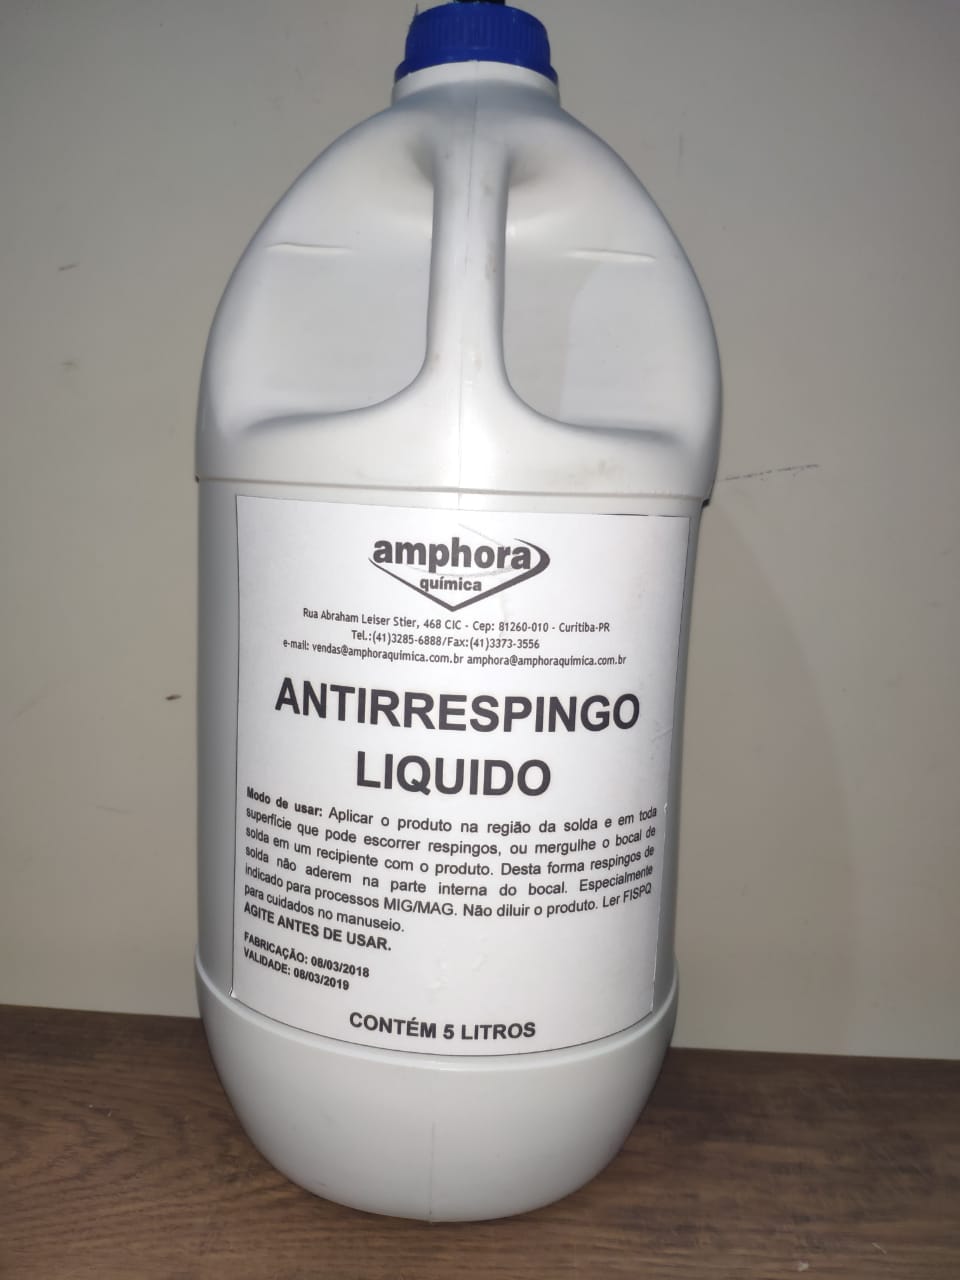 Antirespingo Liquido S/ Silicone 5 Lts Amphora